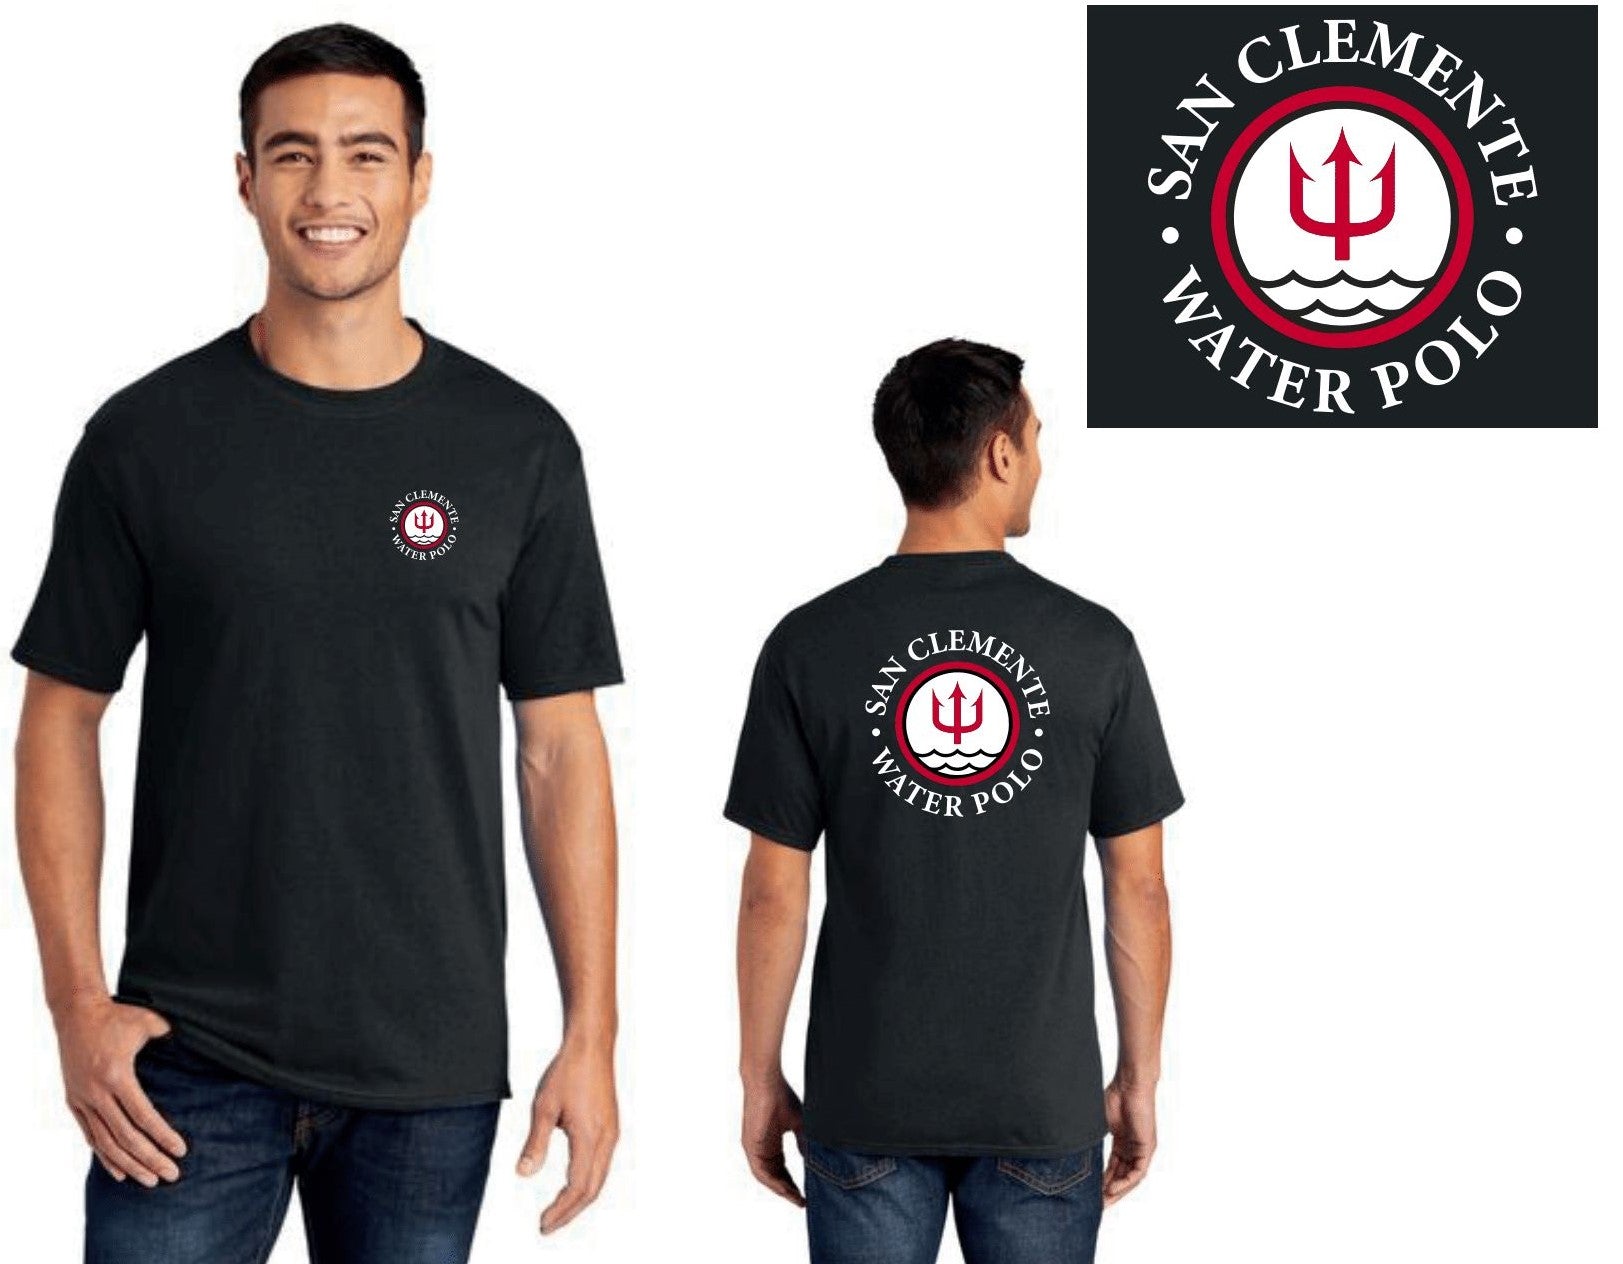 San Clemente WPC - Team Store - Uni-Sex T-Shirt